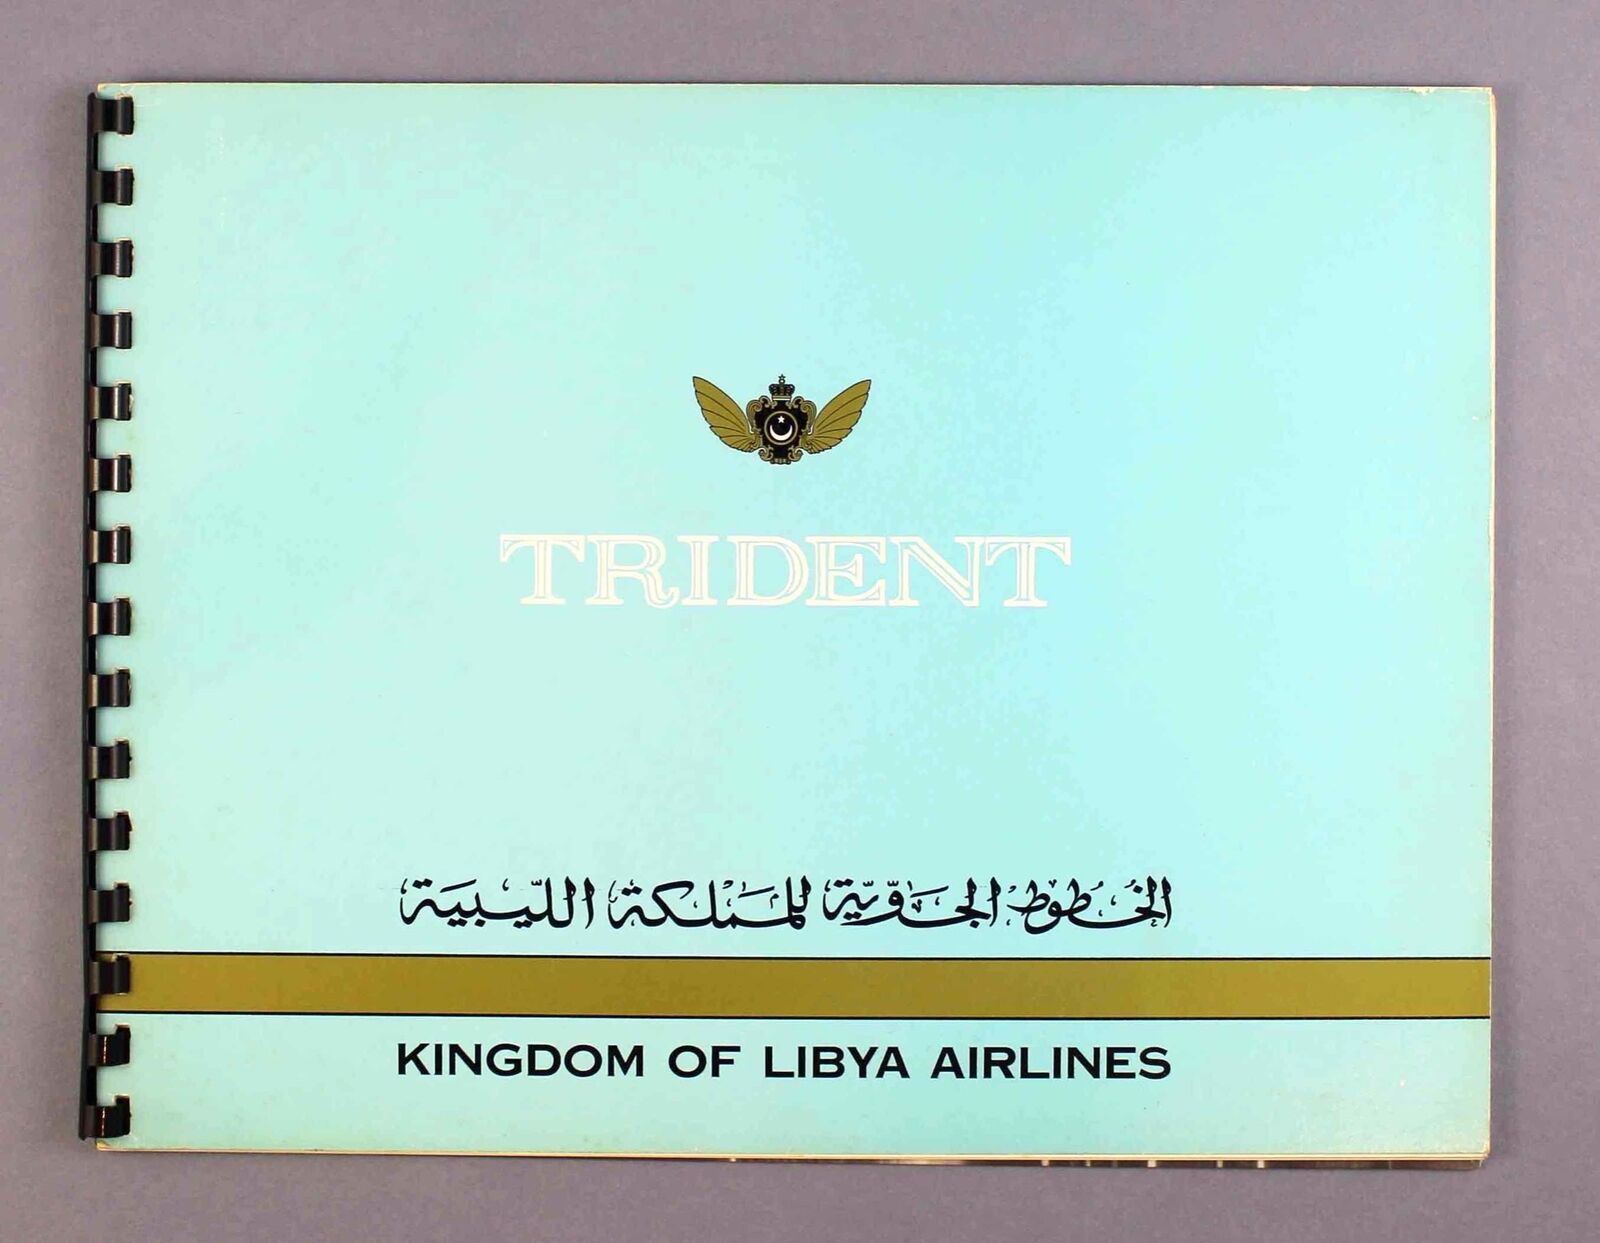 KINGDOM OF LIBYA AIRLINES TRIDENT VINTAGE HAWKER SIDDELEY BROCHURE